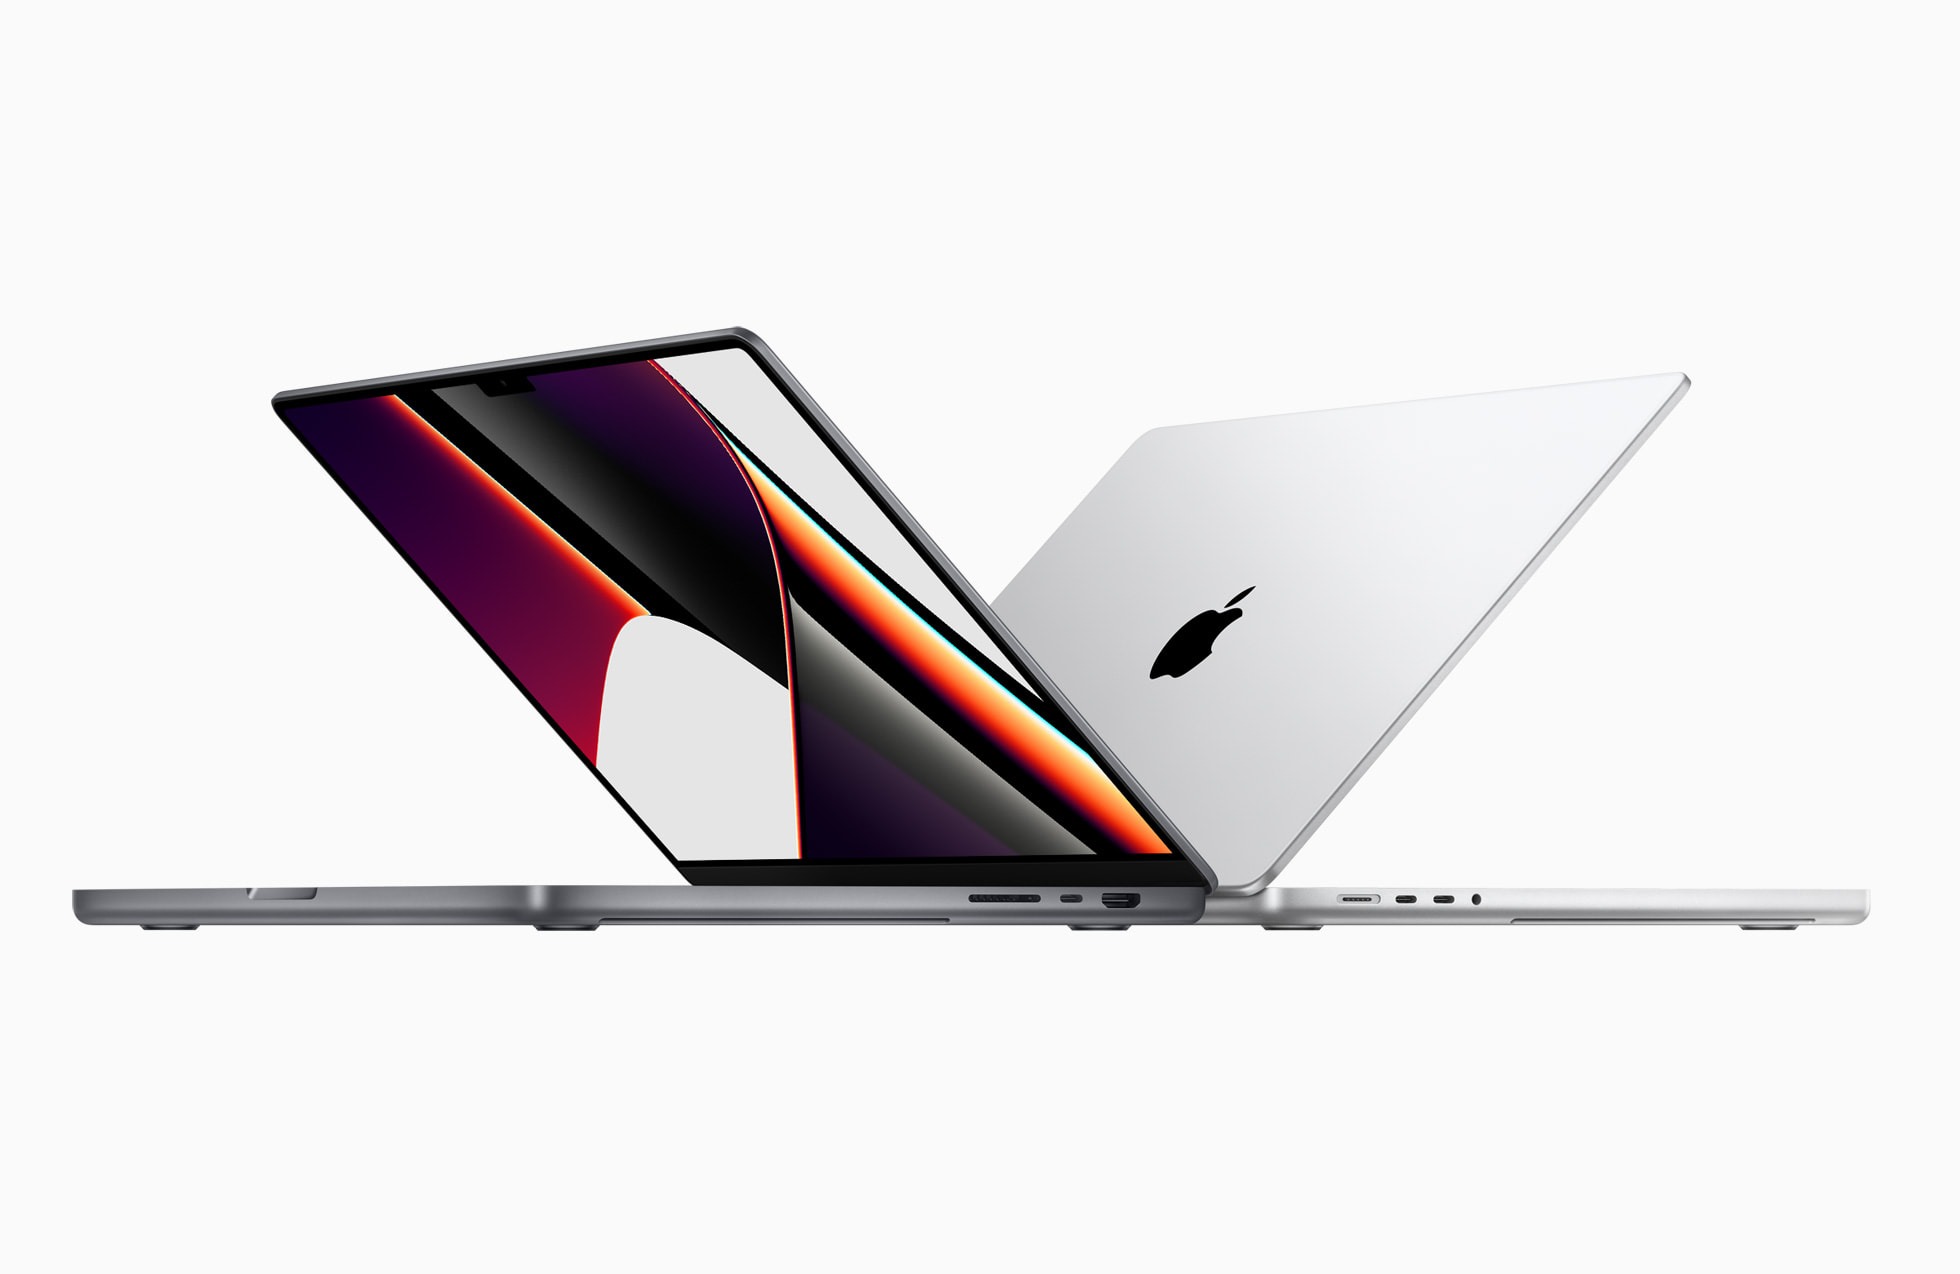 L'événement Apple en octobre apportera de nouveaux iPad et Mac